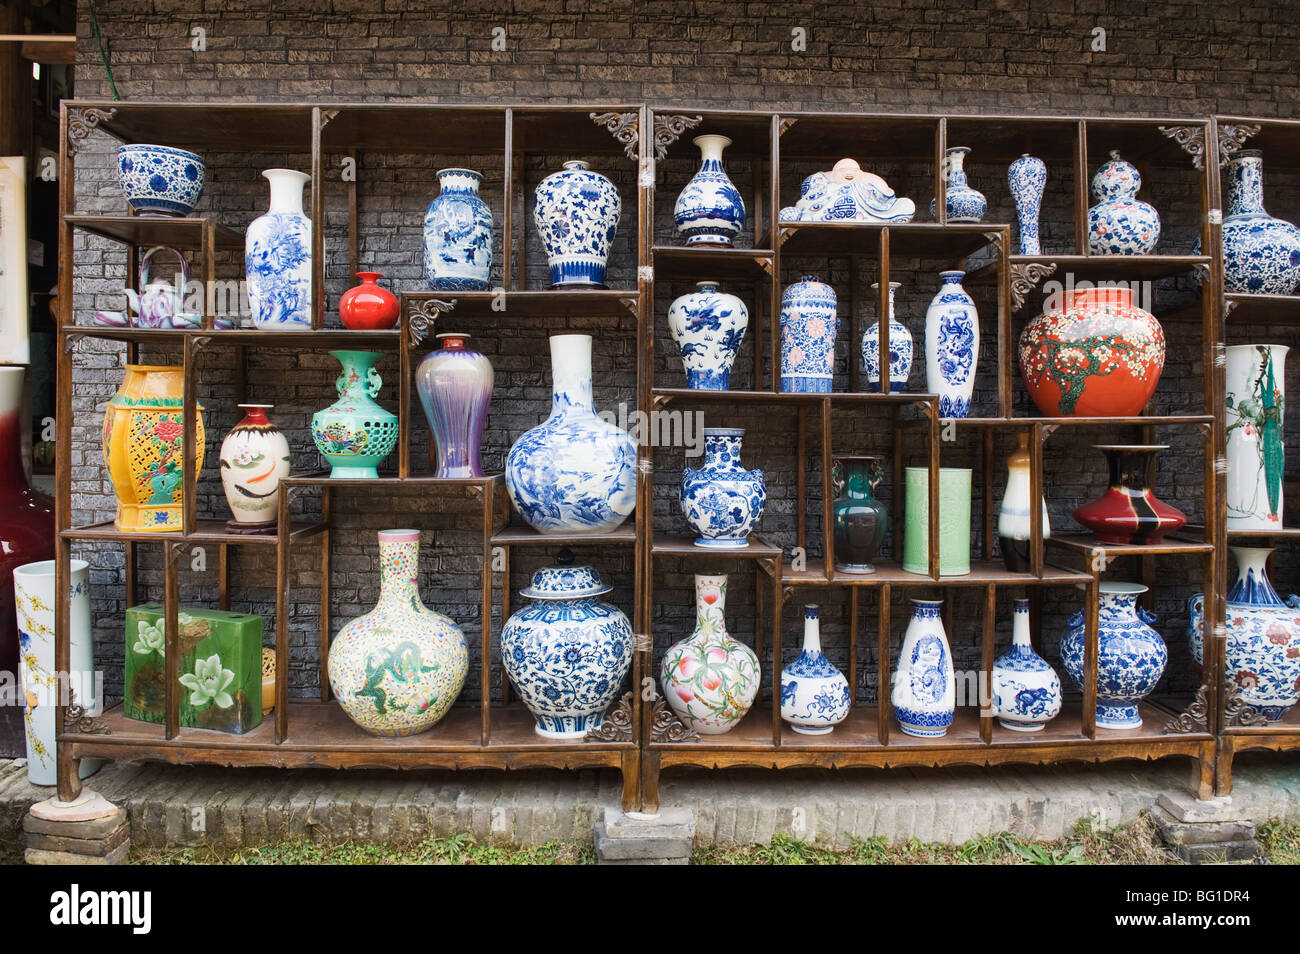 Un écran de vases Qing et Ming à l'usine de poterie ancienne, Jingdezhen city, province de Jiangxi, Chine, Asie Banque D'Images